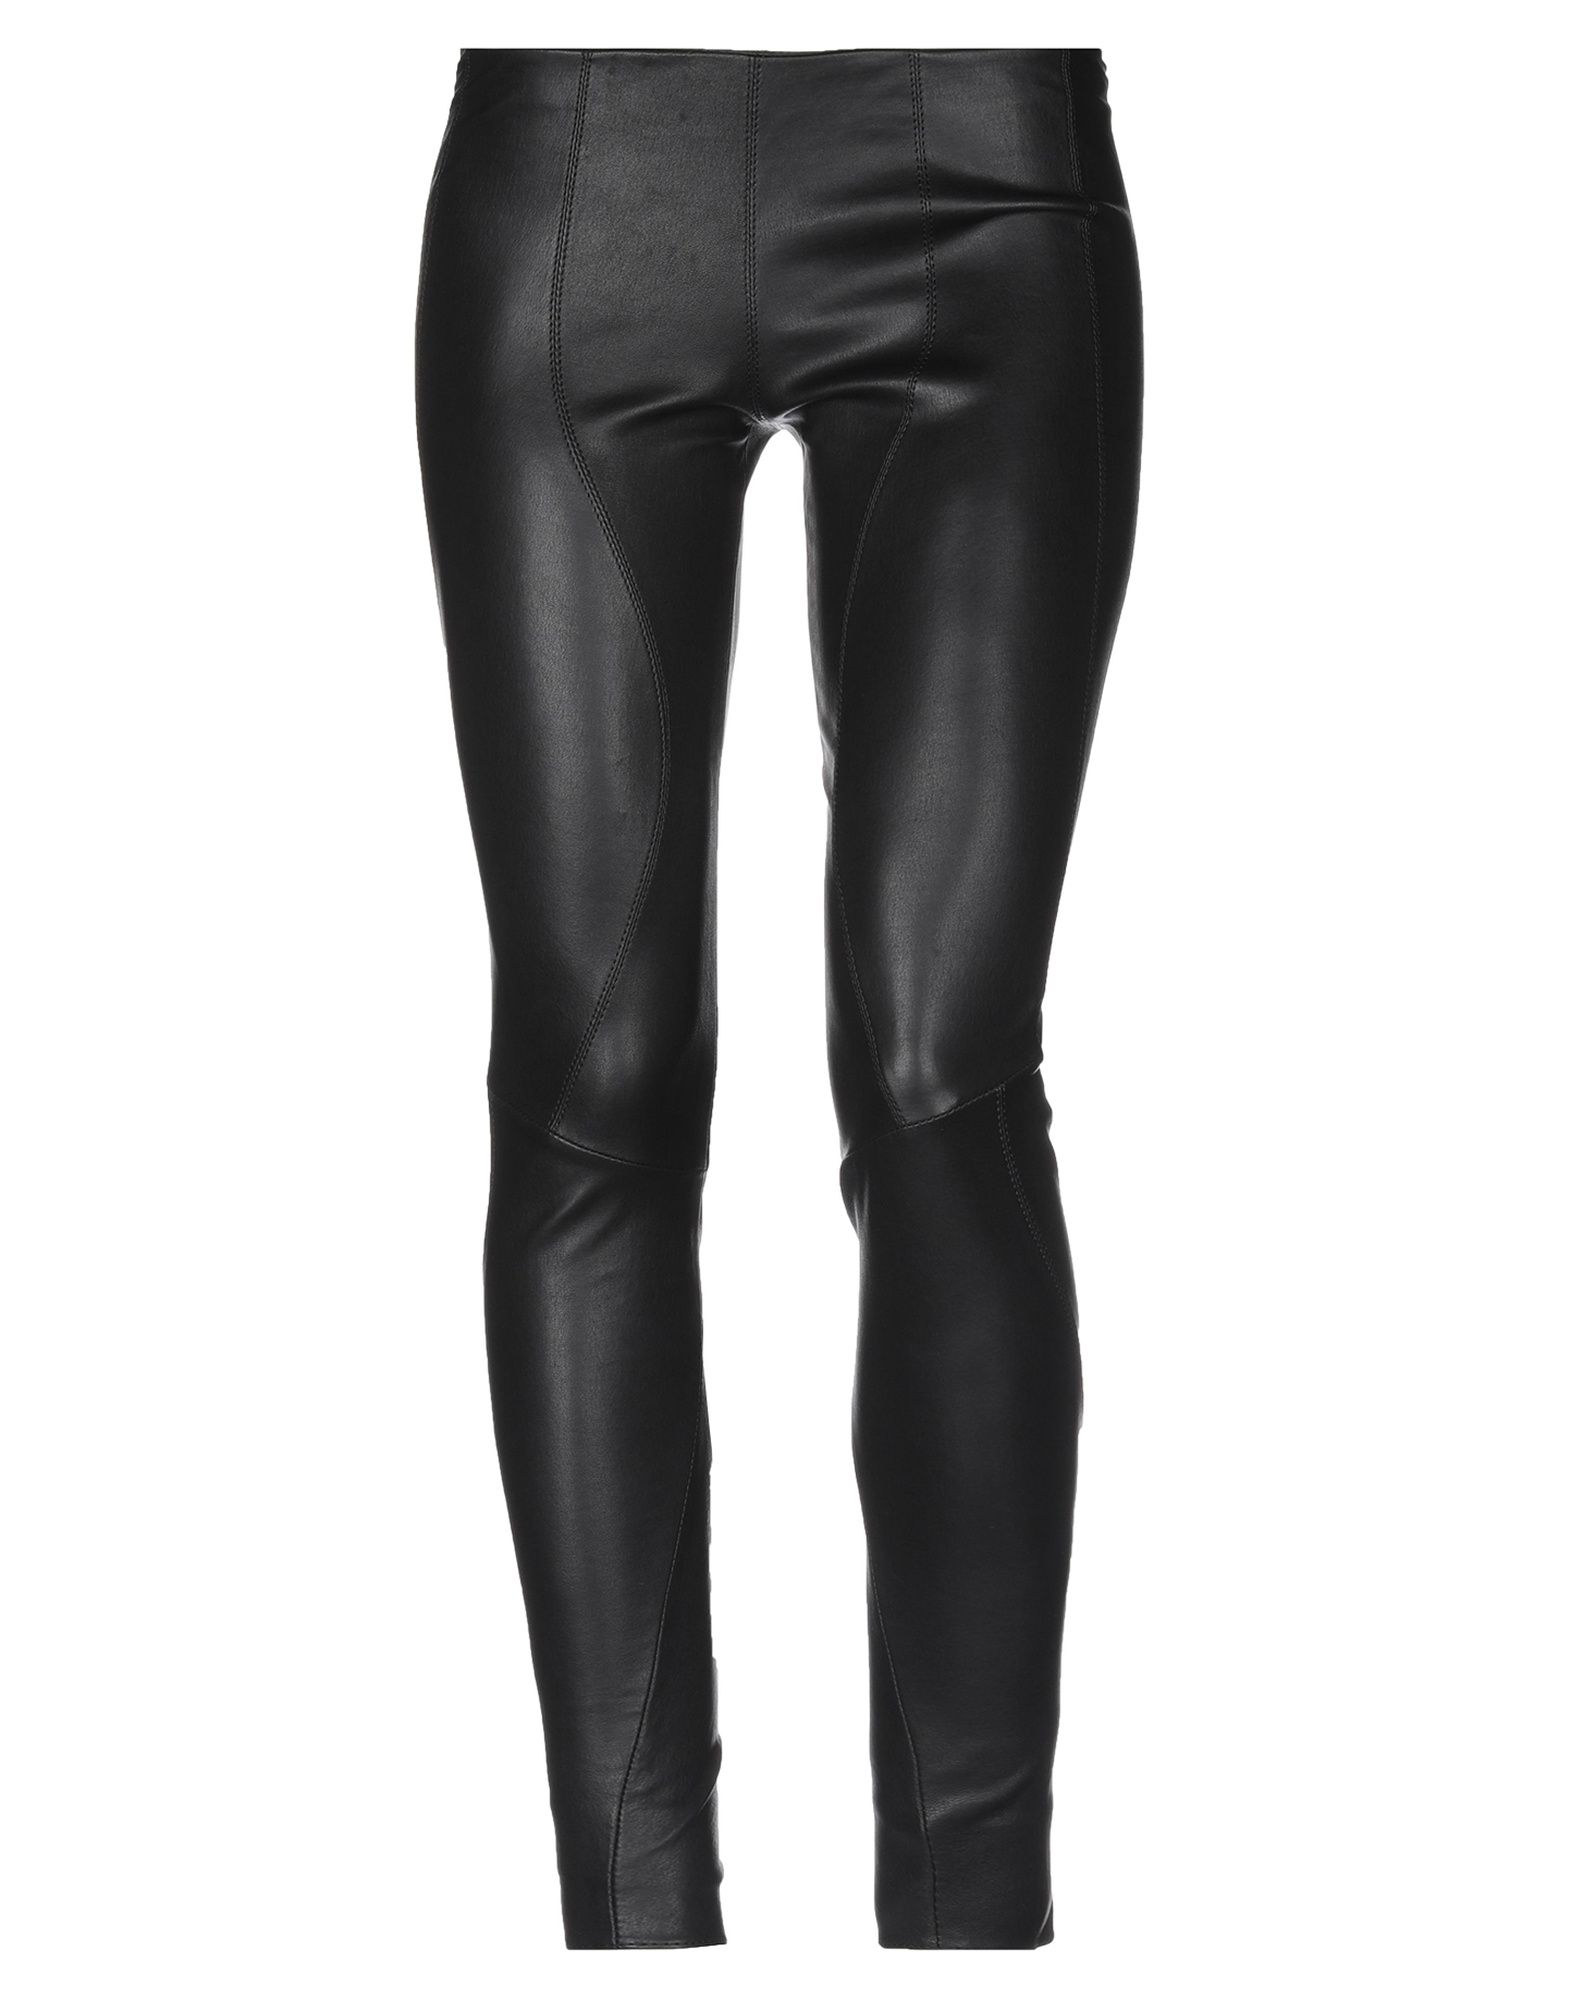 APHERO Casual pants,13145631MV 7